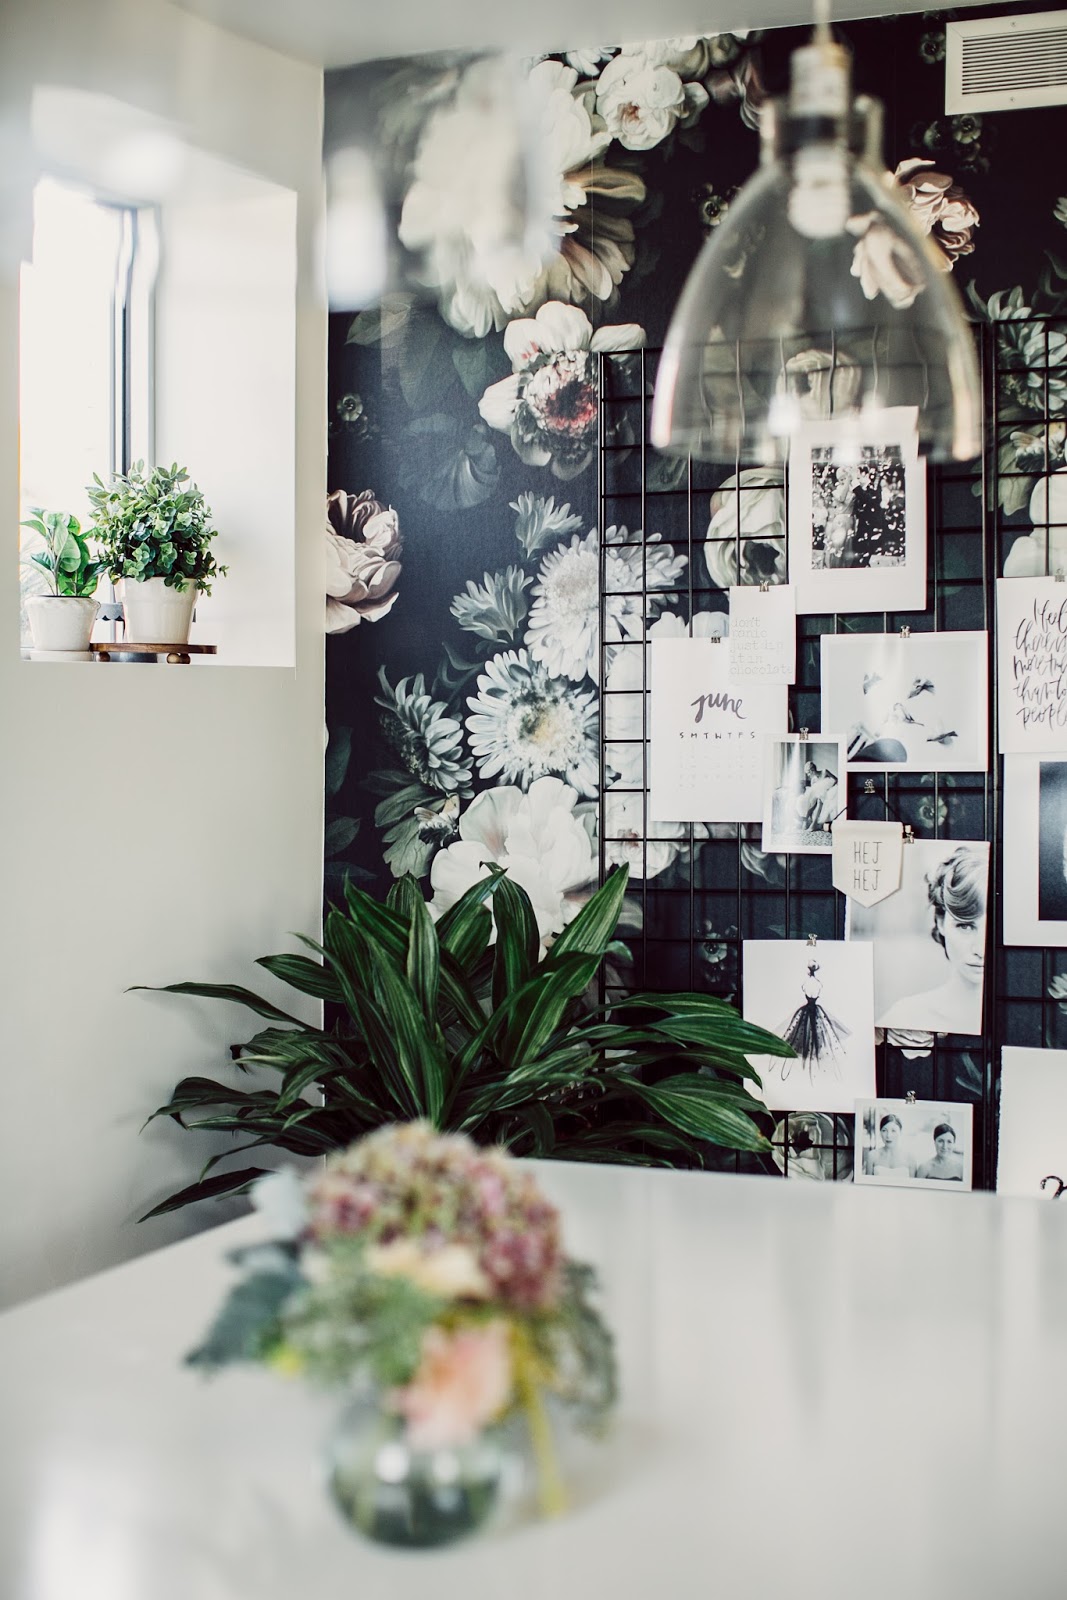 Papel pintado floral en una oficina y una genial idea low-cost